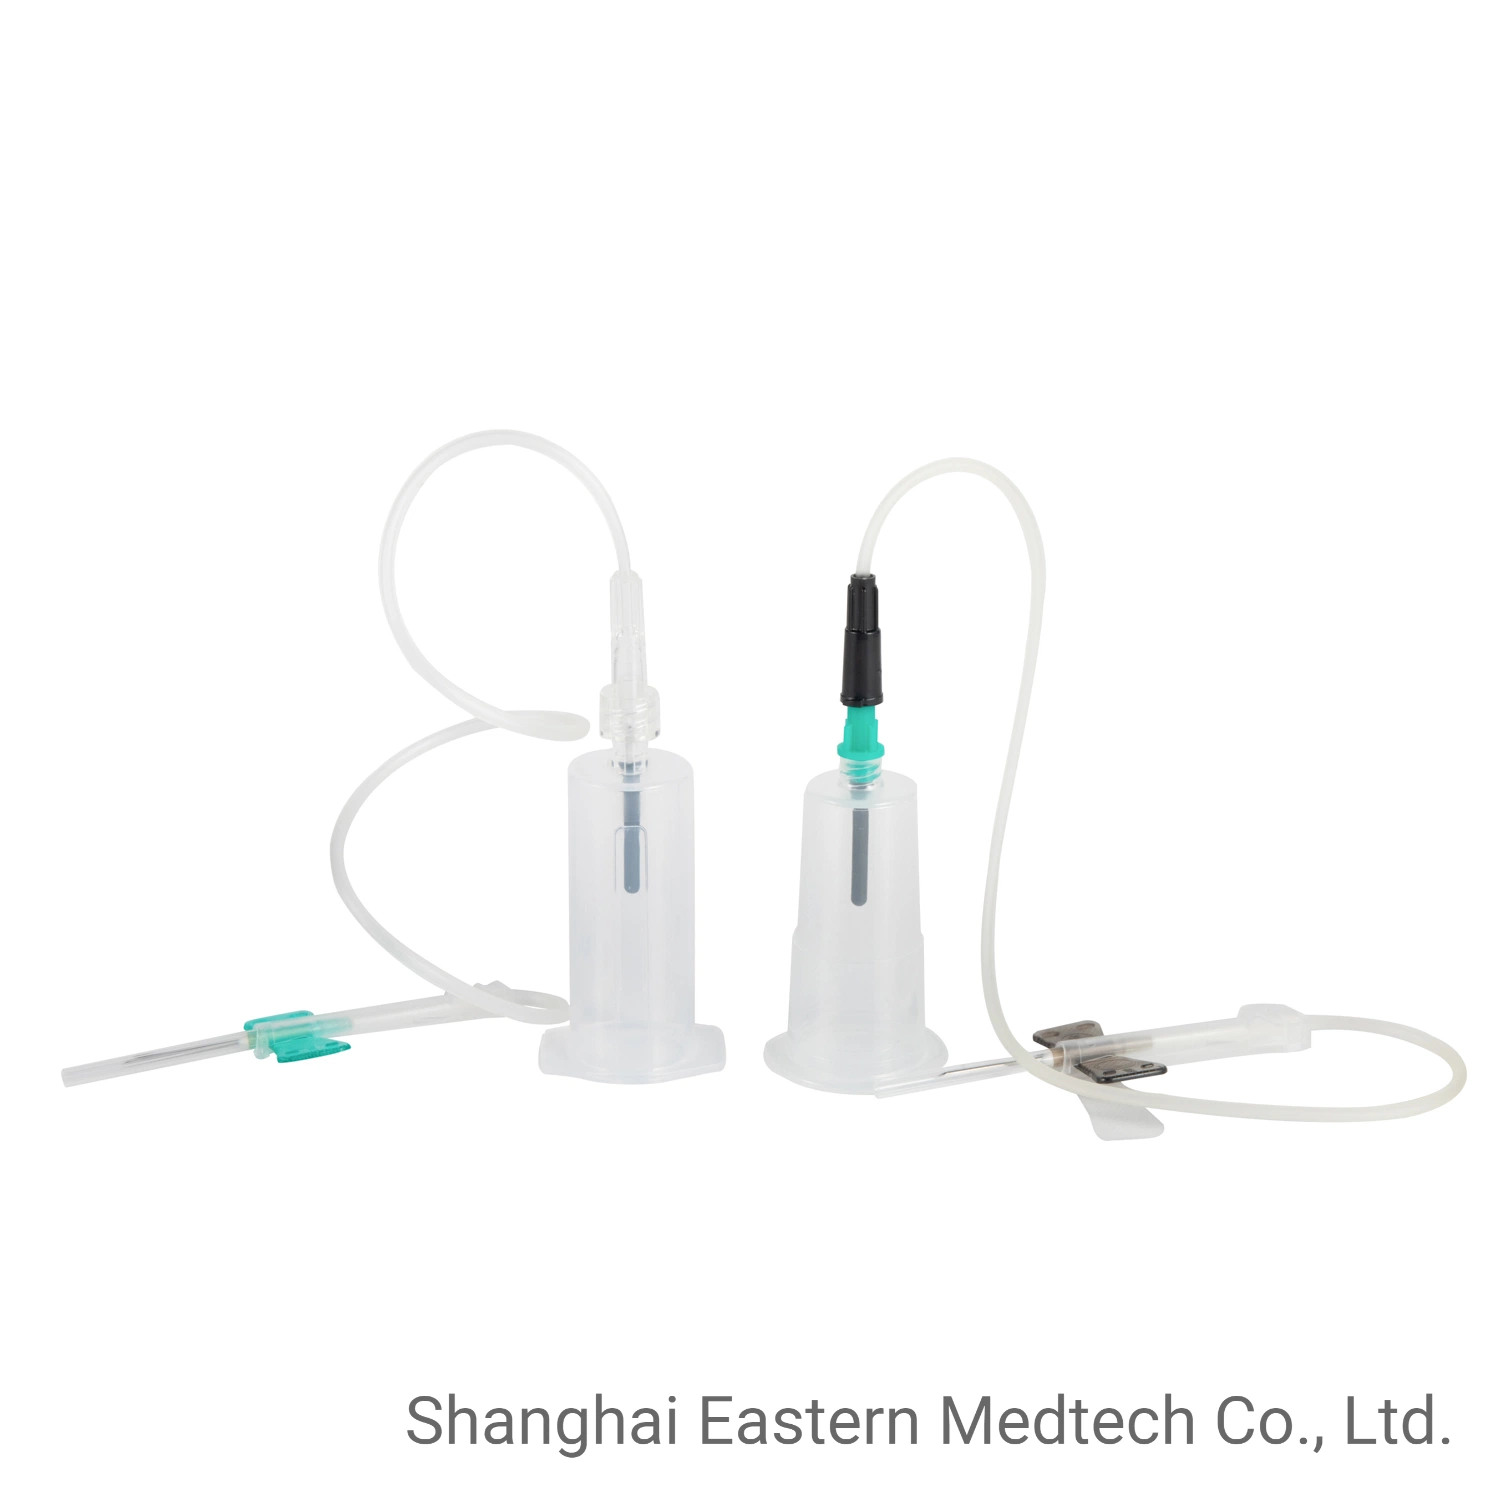 Agulha Fina de suprimentos médicos, a China por grosso, ISO certificado CE, encaixe o tubo de vácuo, Luer Lock, sistema de coleta de sangue descartáveis Latex-Free